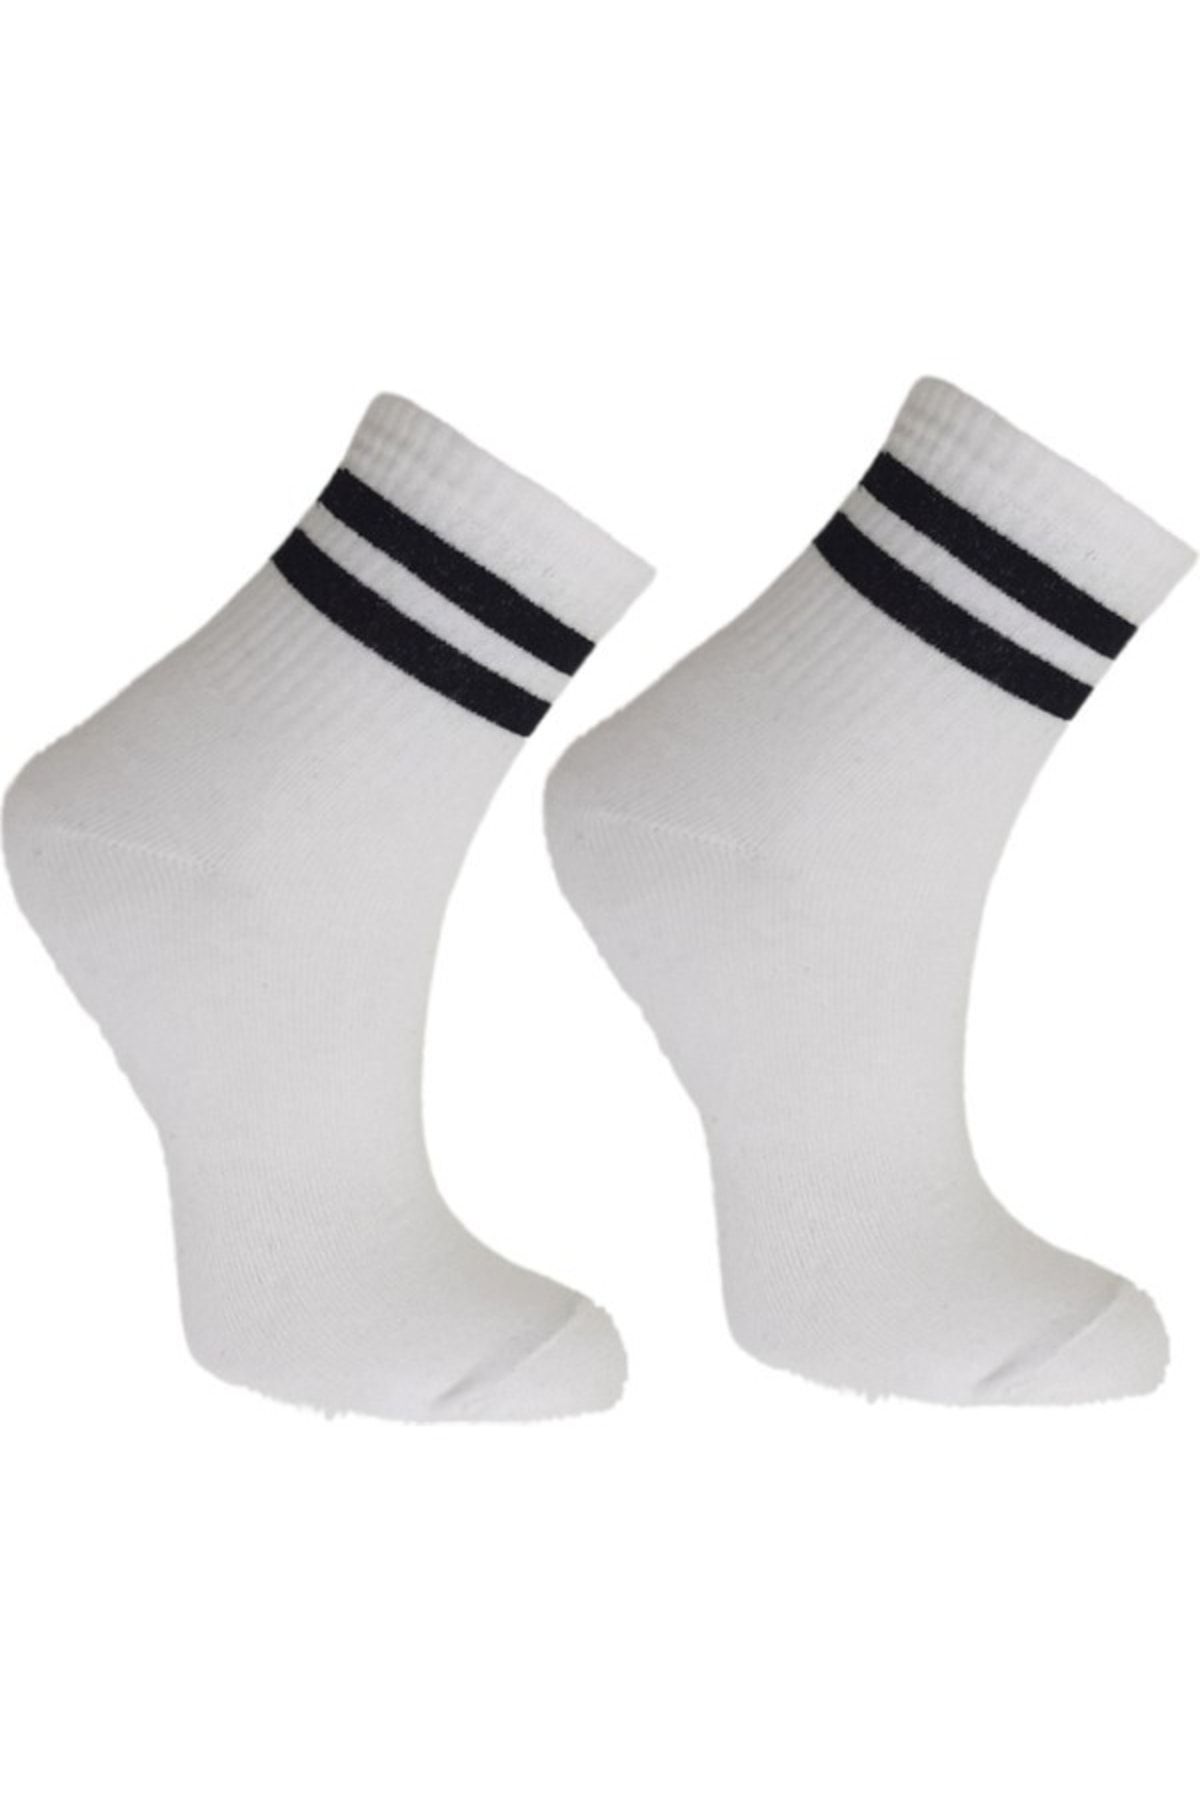 TİSTA Kadın Beyaz Renkli Siyah Çizgili Soket Tenis Çorabı